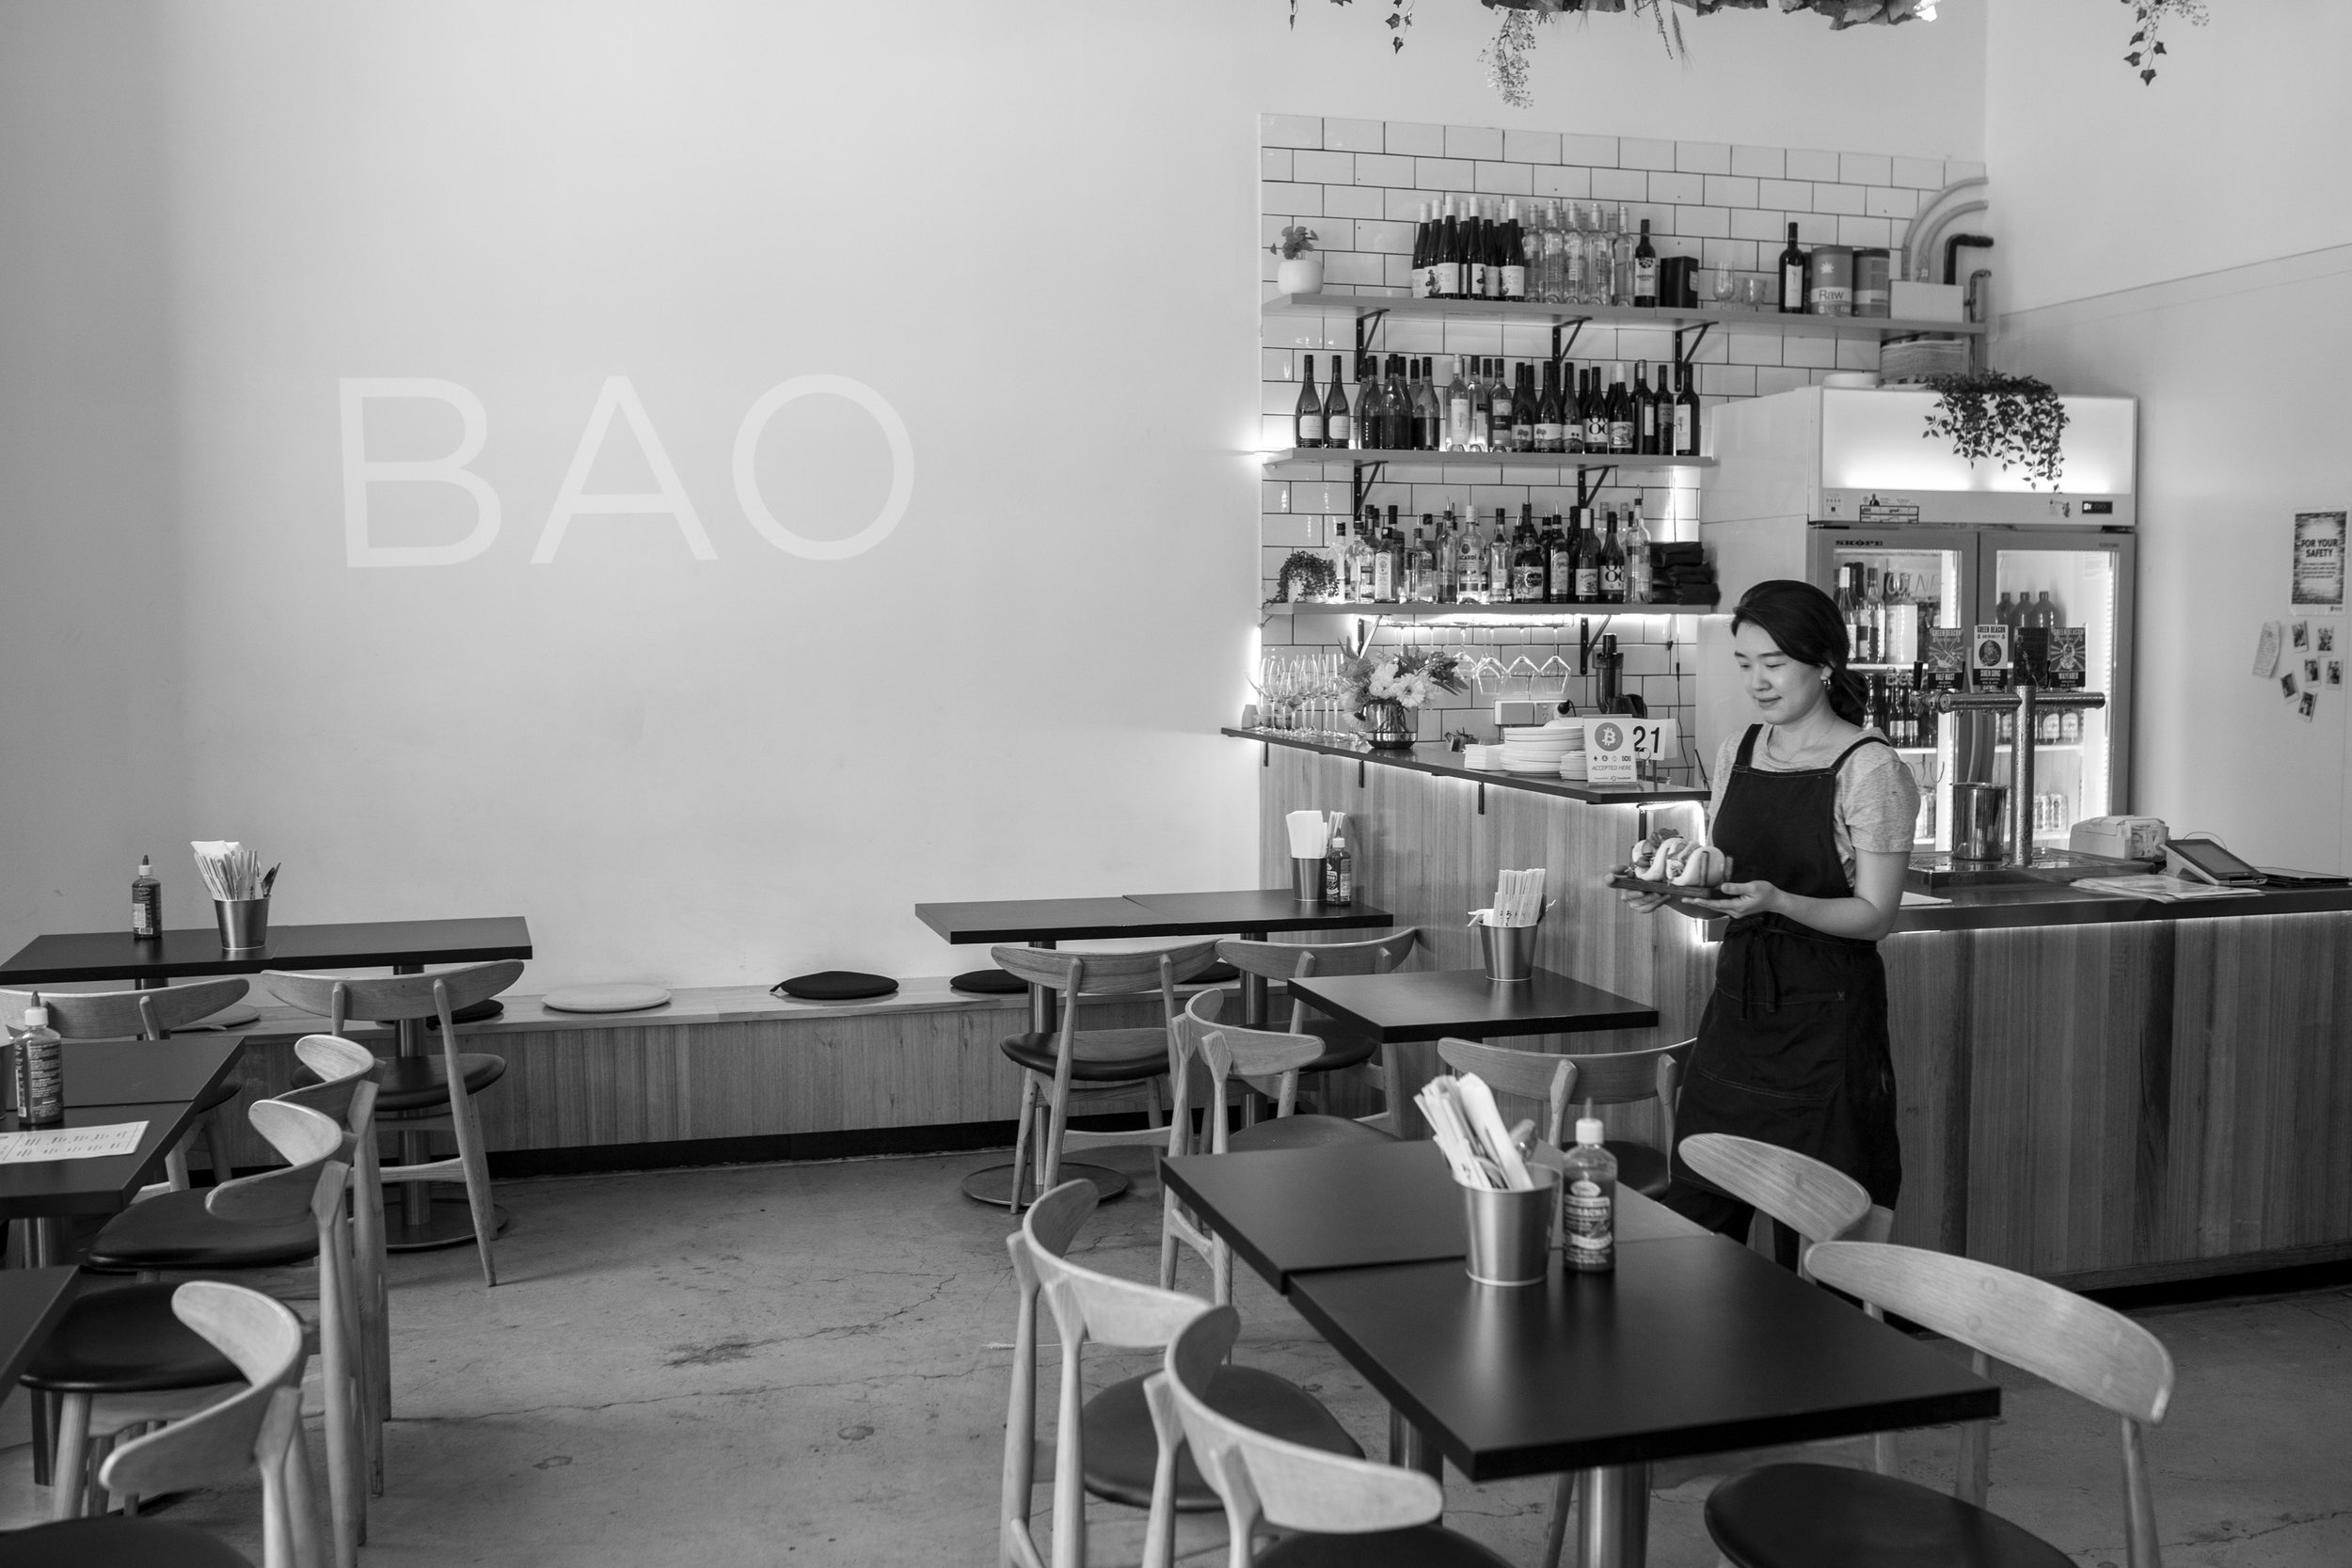  Bao Cafe 